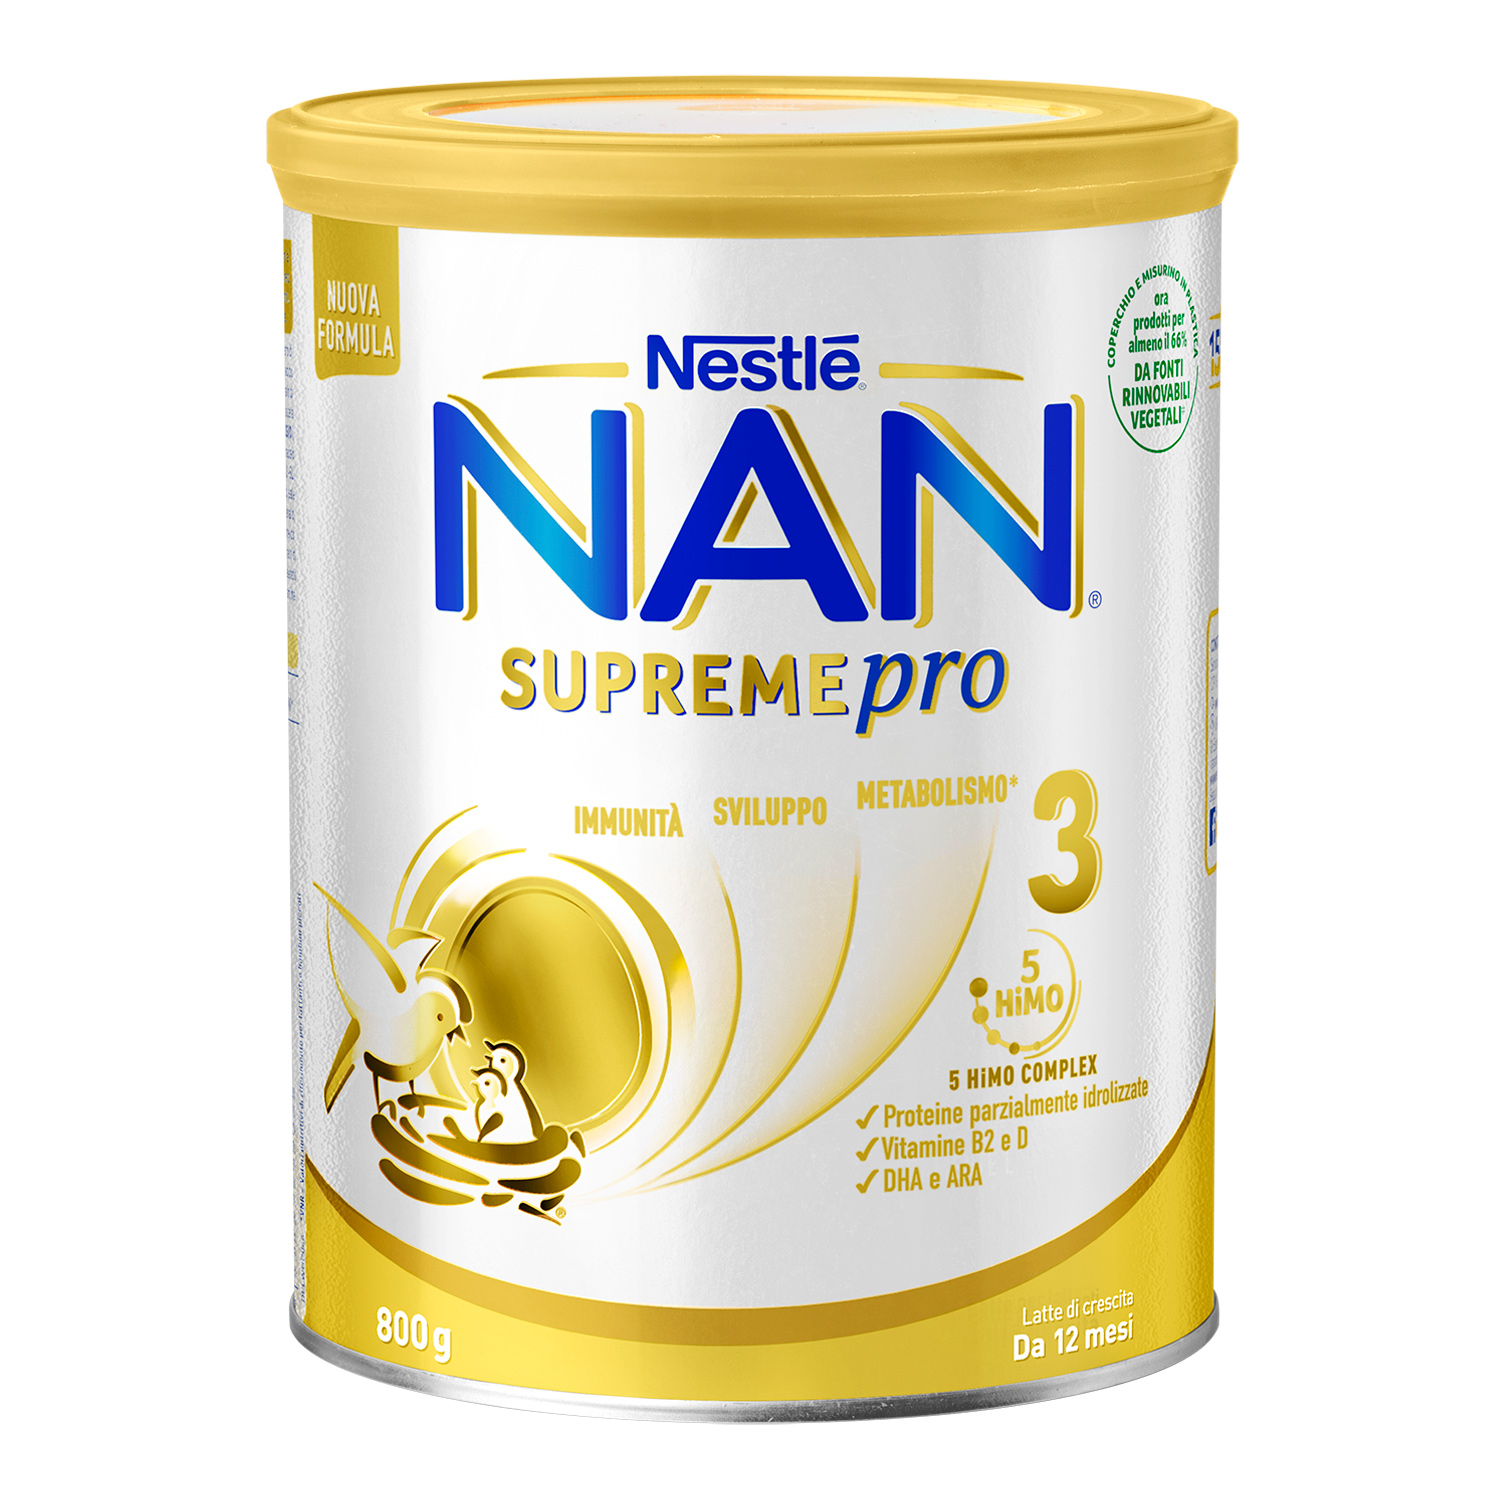 Nestlé nan supremepro 3, da 12 mesi. latte di crescita in polvere